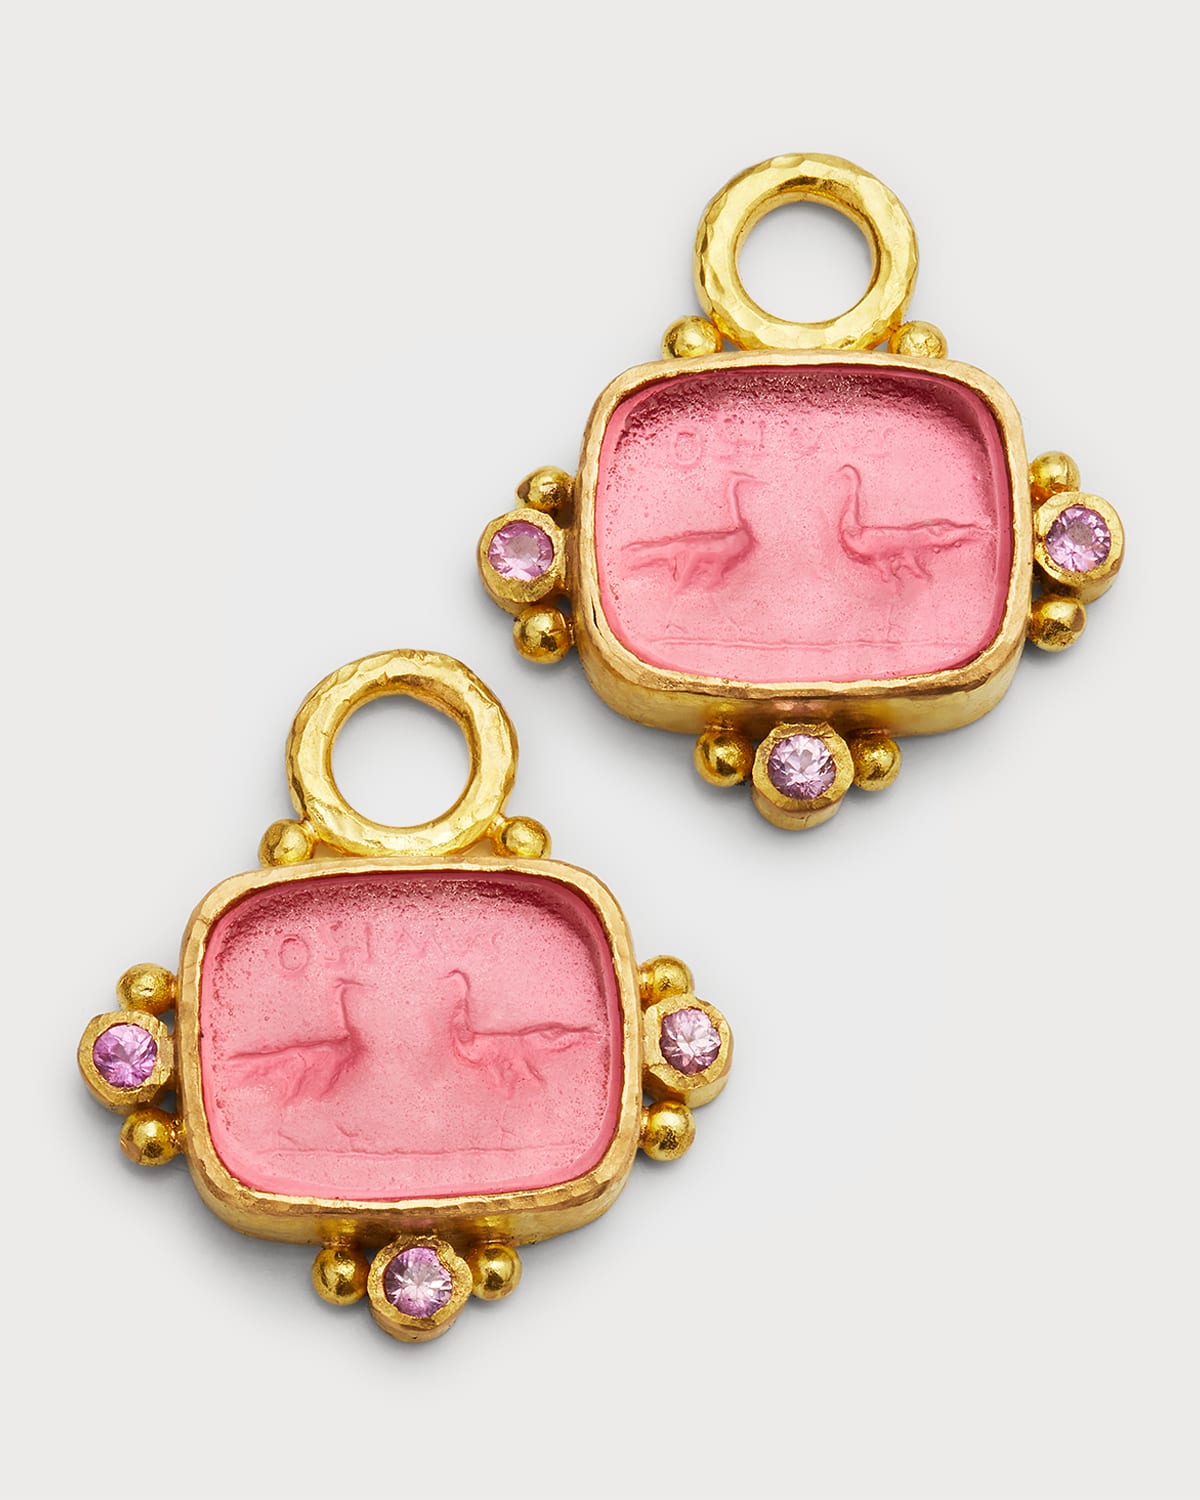 Elizabeth Locke 19K Venetian Glass Intaglio Two Cranes Earring Pendants, Pink